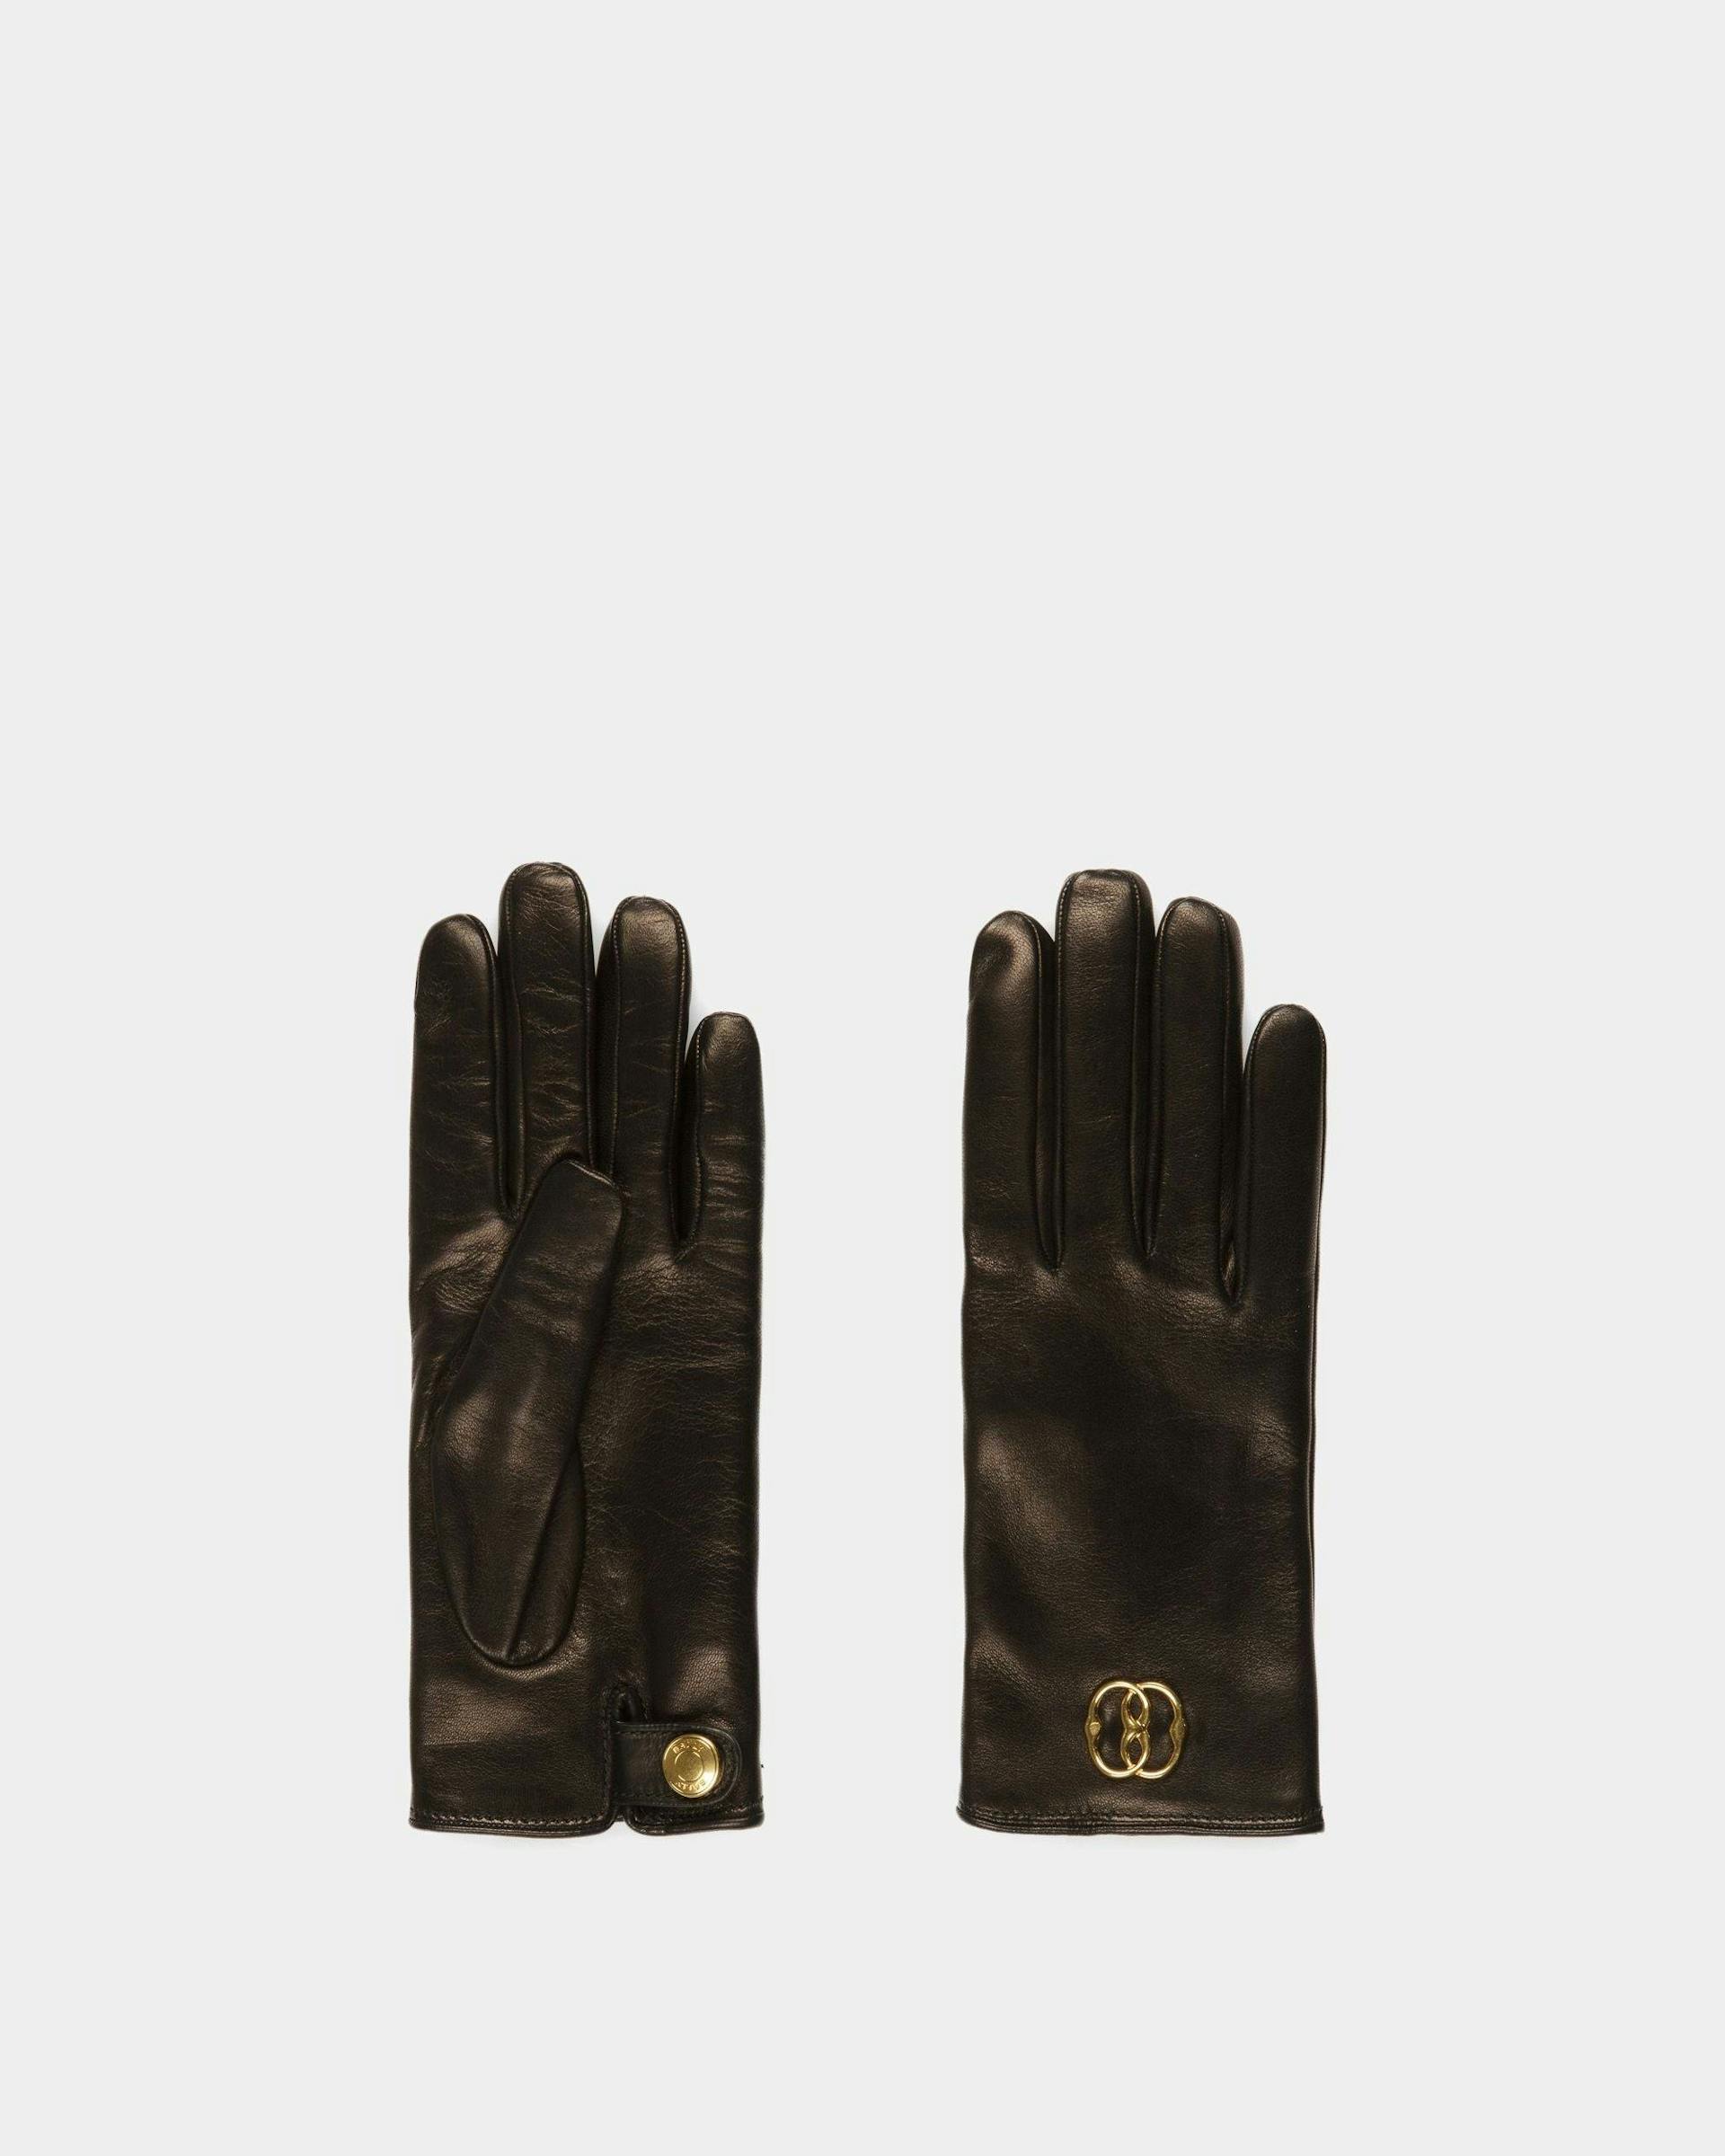 Emblem Gloves - Bally